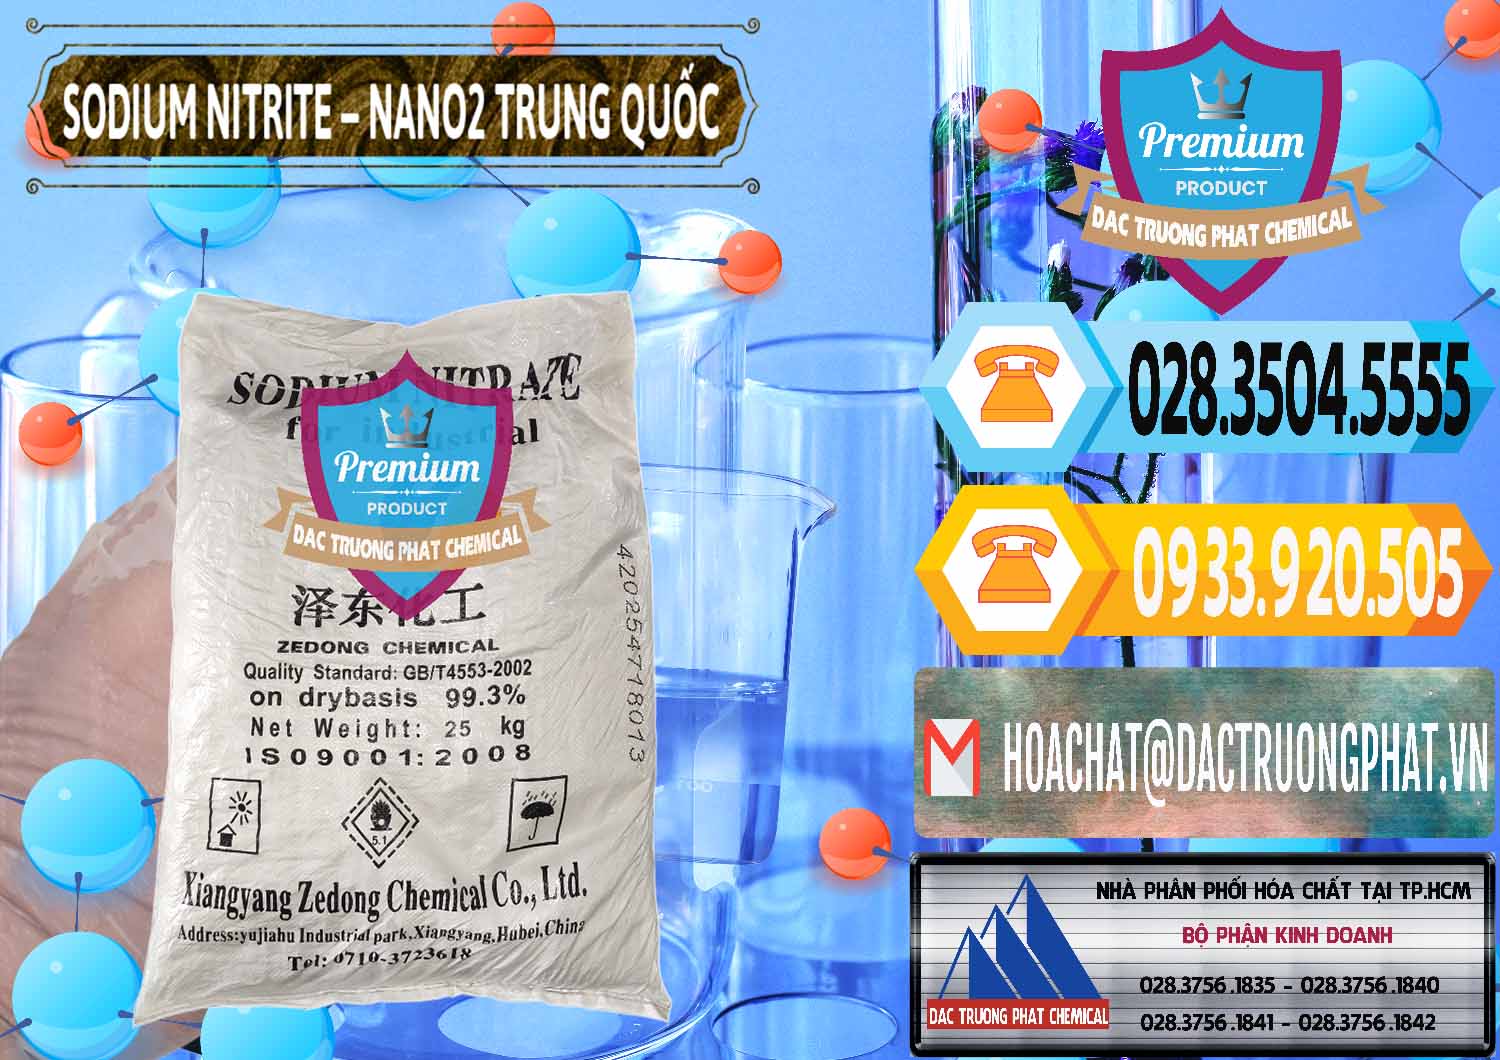 Nơi bán - cung ứng Sodium Nitrite - NANO2 Zedong Trung Quốc China - 0149 - Nhà cung cấp & phân phối hóa chất tại TP.HCM - hoachattayrua.net